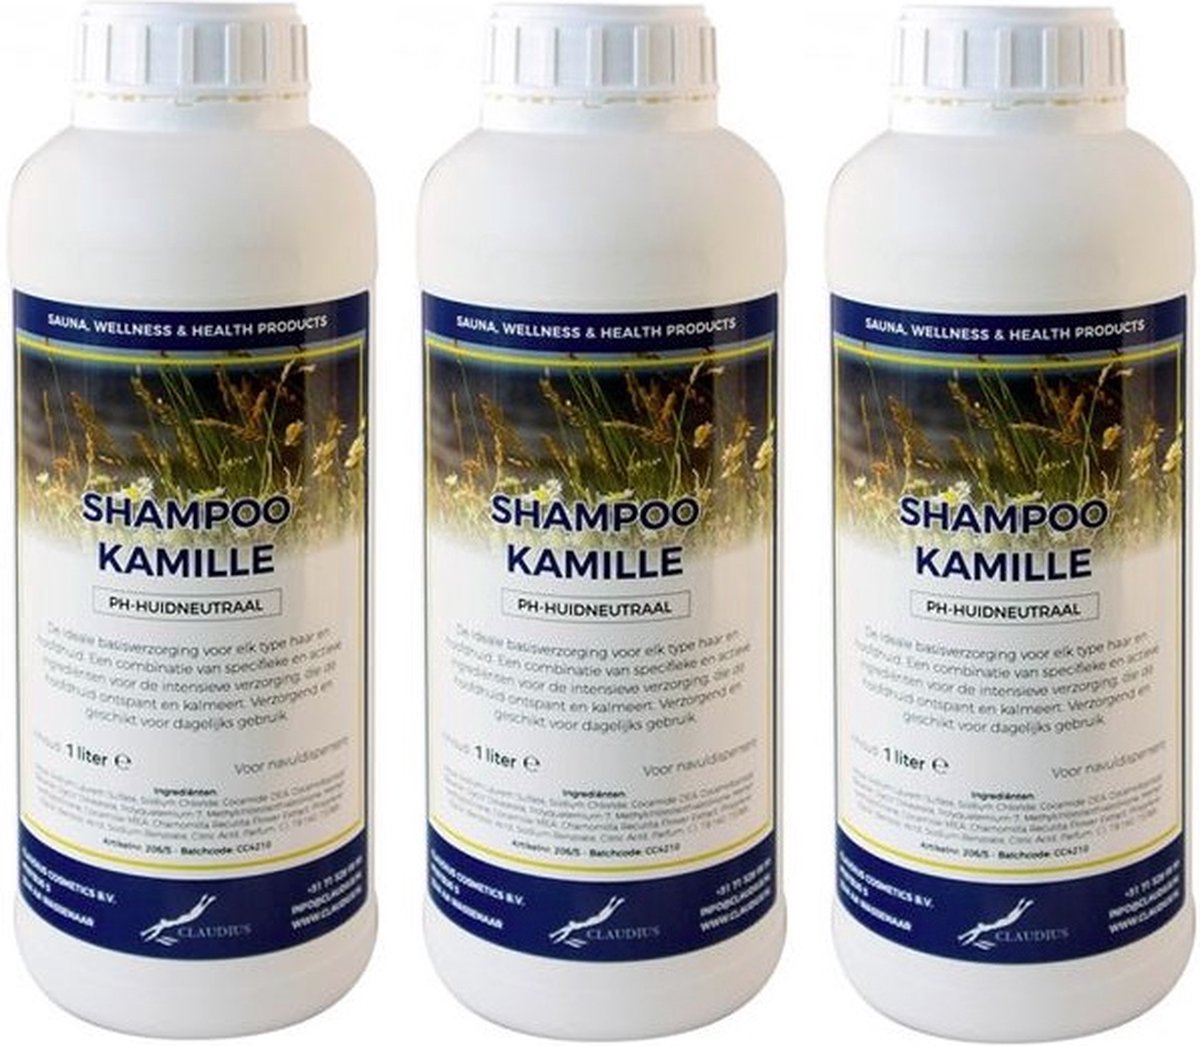 Shampoo Kamille - 1 Liter - set van 3 stuks